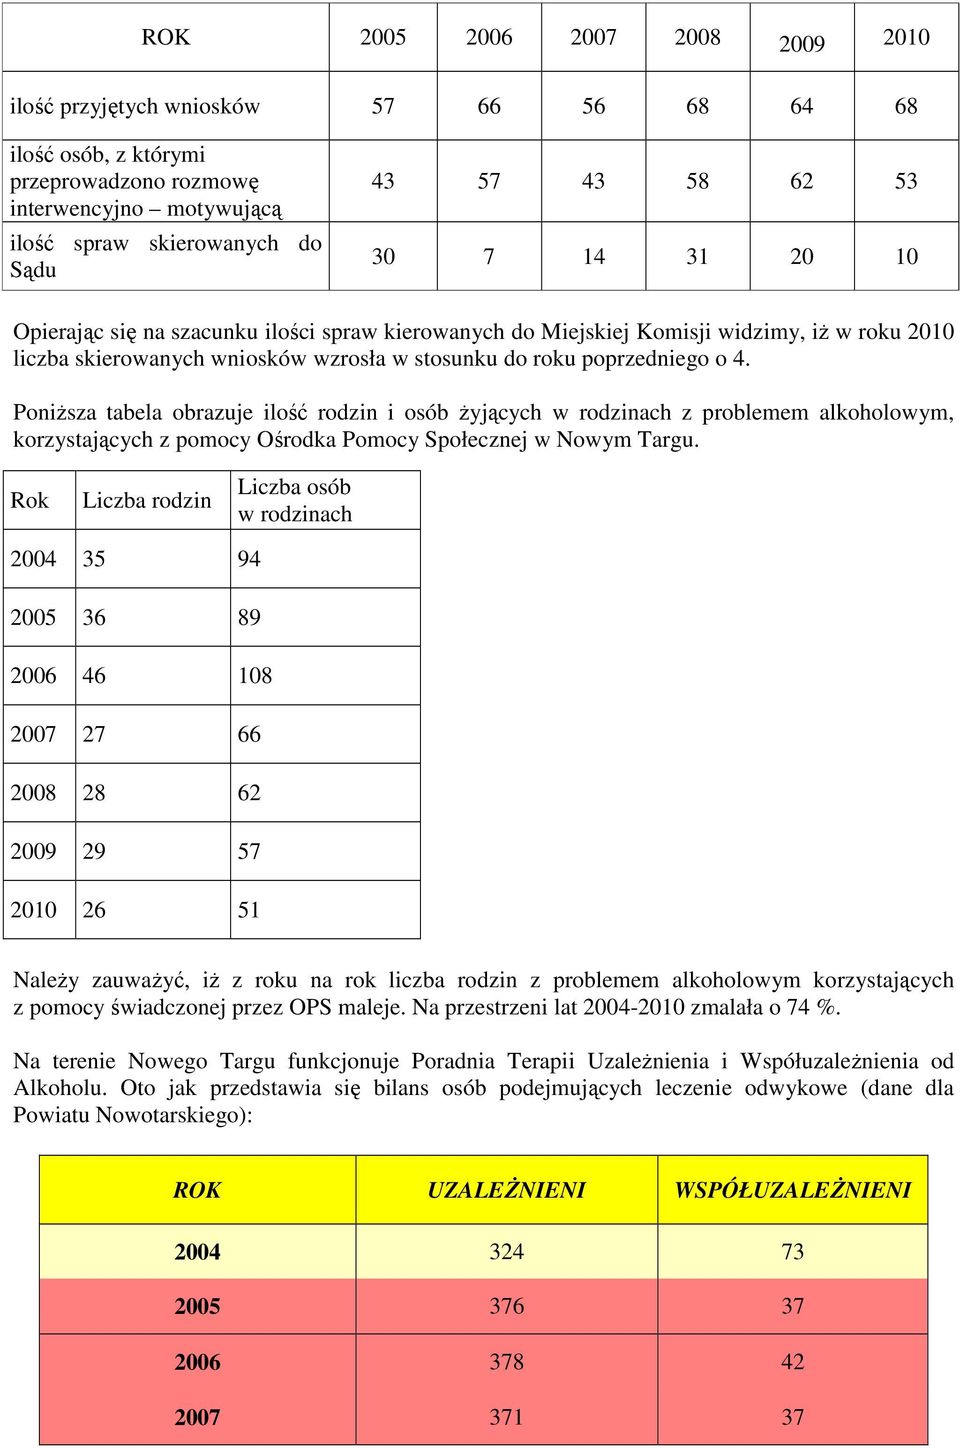 Poniższa tabela obrazuje ilość rodzin i osób żyjących w rodzinach z problemem alkoholowym, korzystających z pomocy Ośrodka Pomocy Społecznej w Nowym Targu.